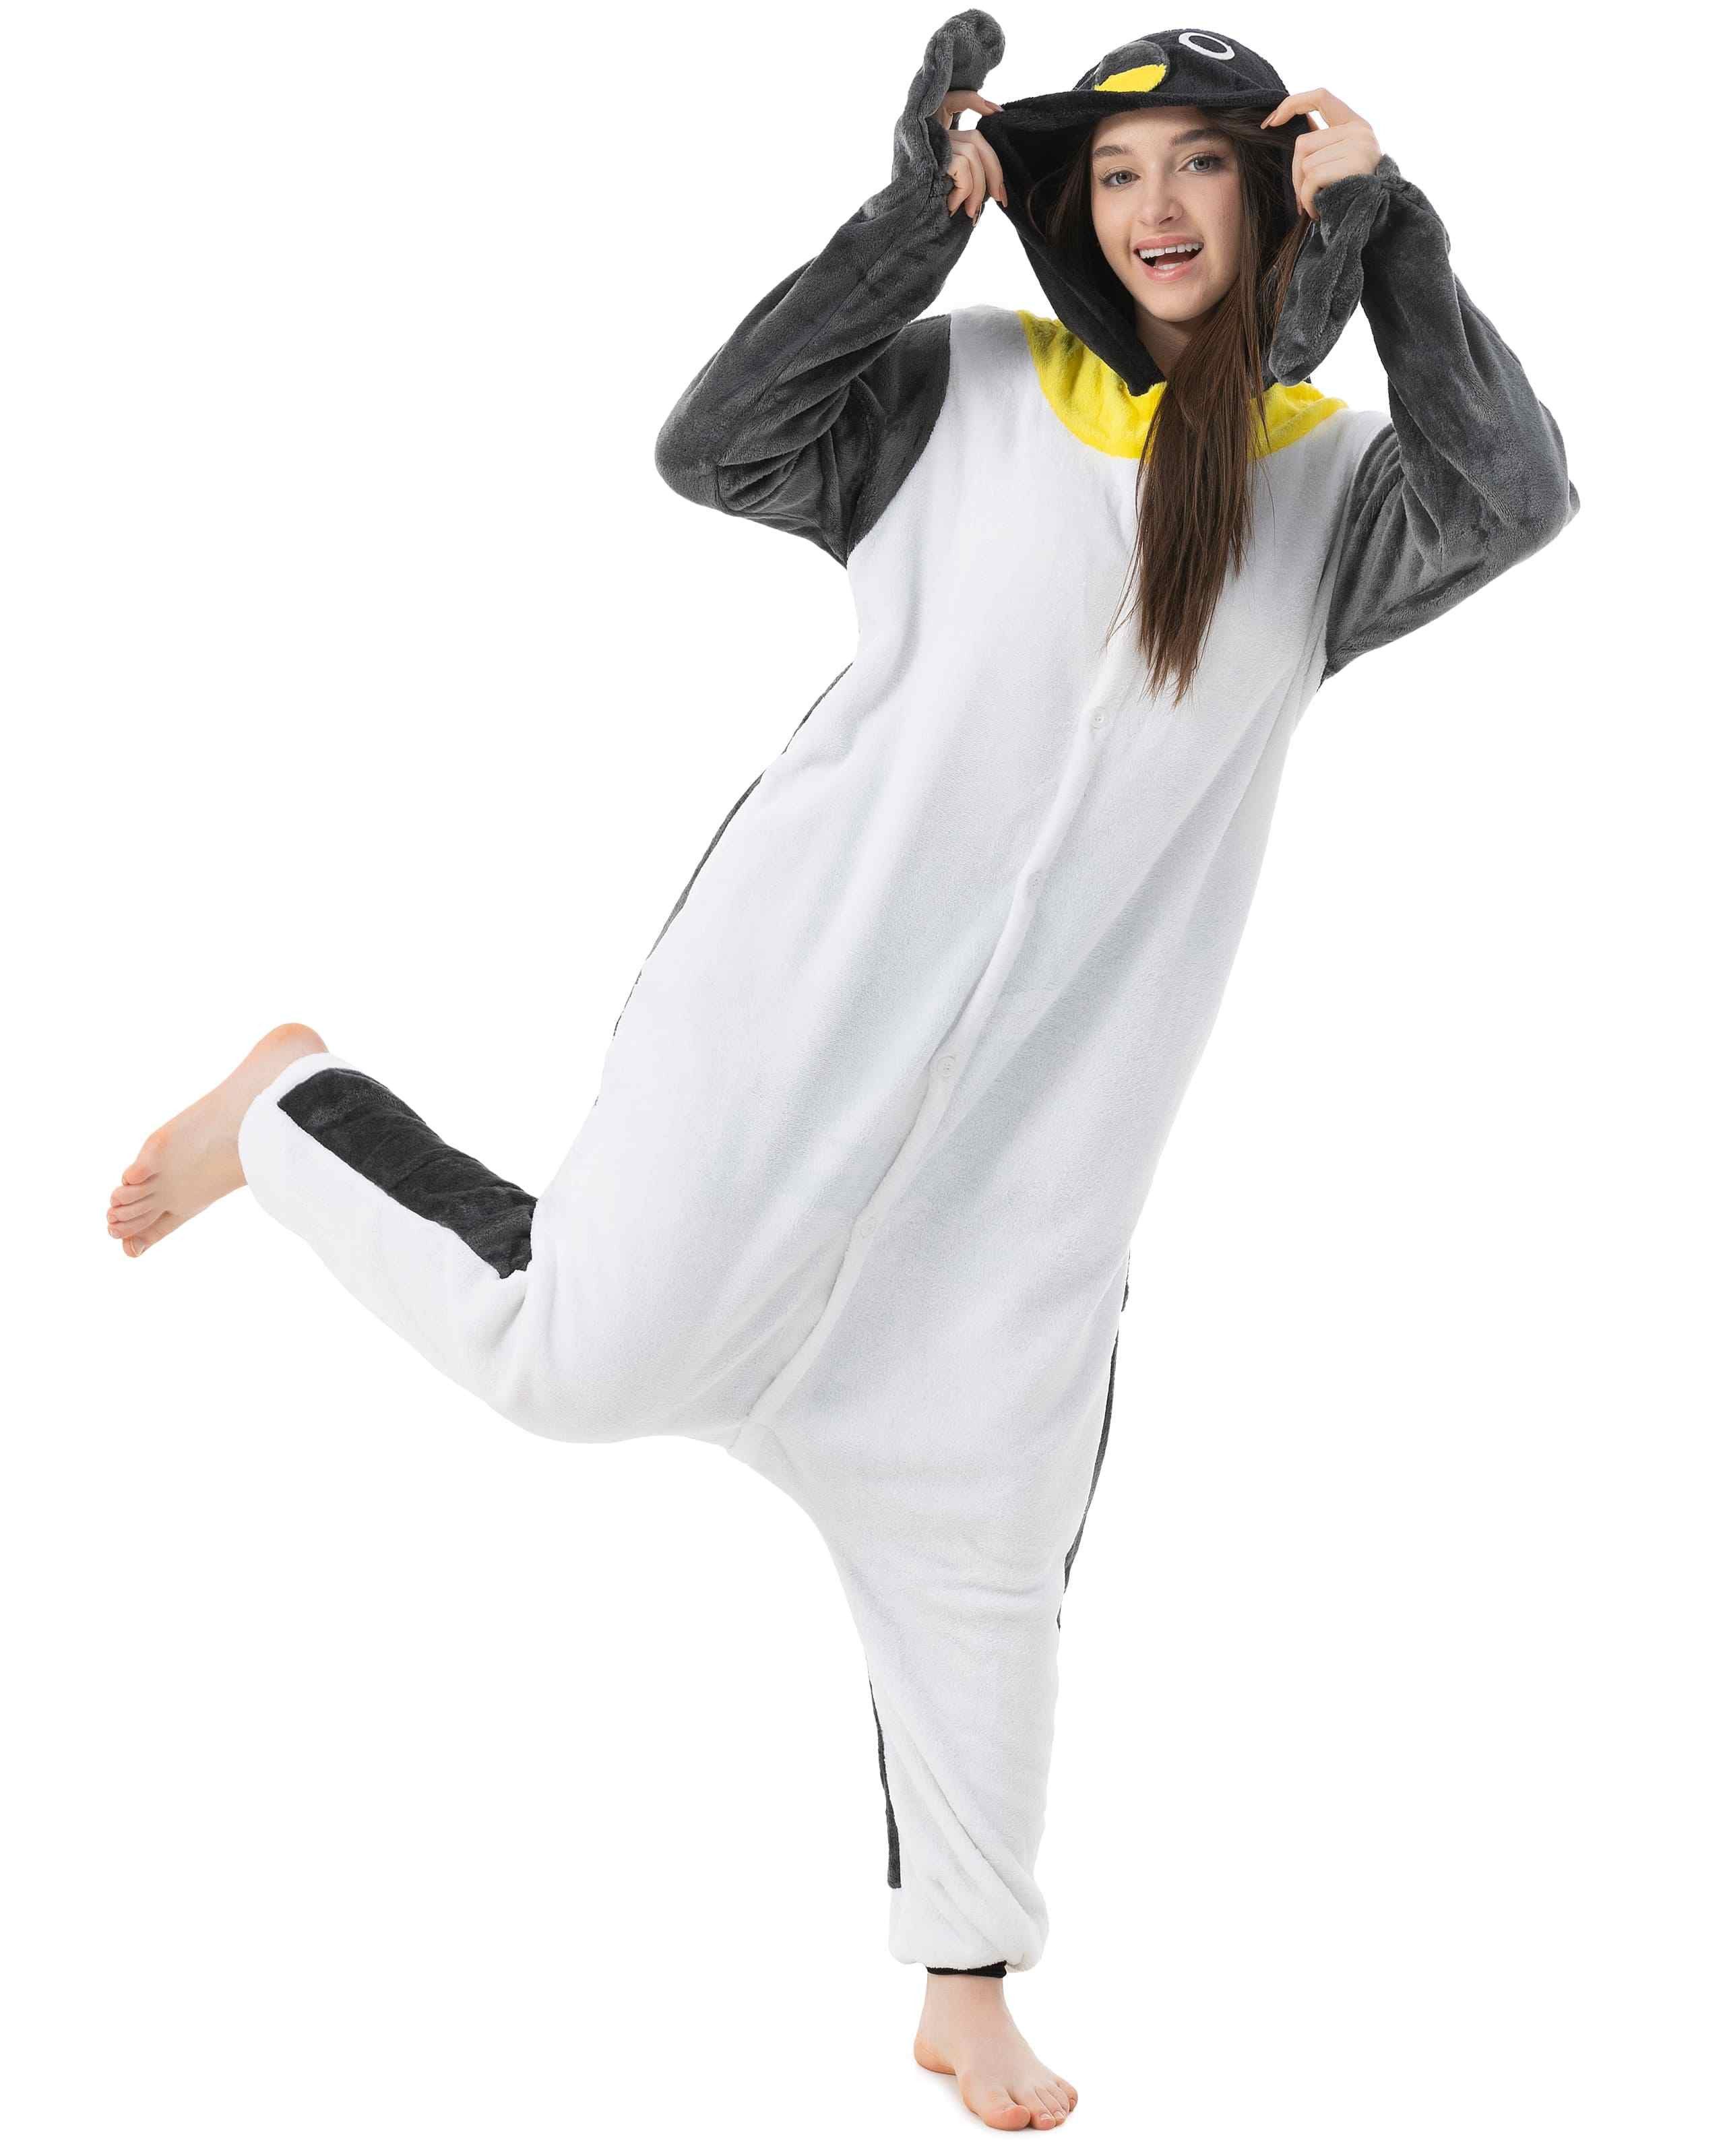 Katara Partyanzug Meerestiere Jumpsuit Kostüm für Erwachsene S-XL, (145-155cm)